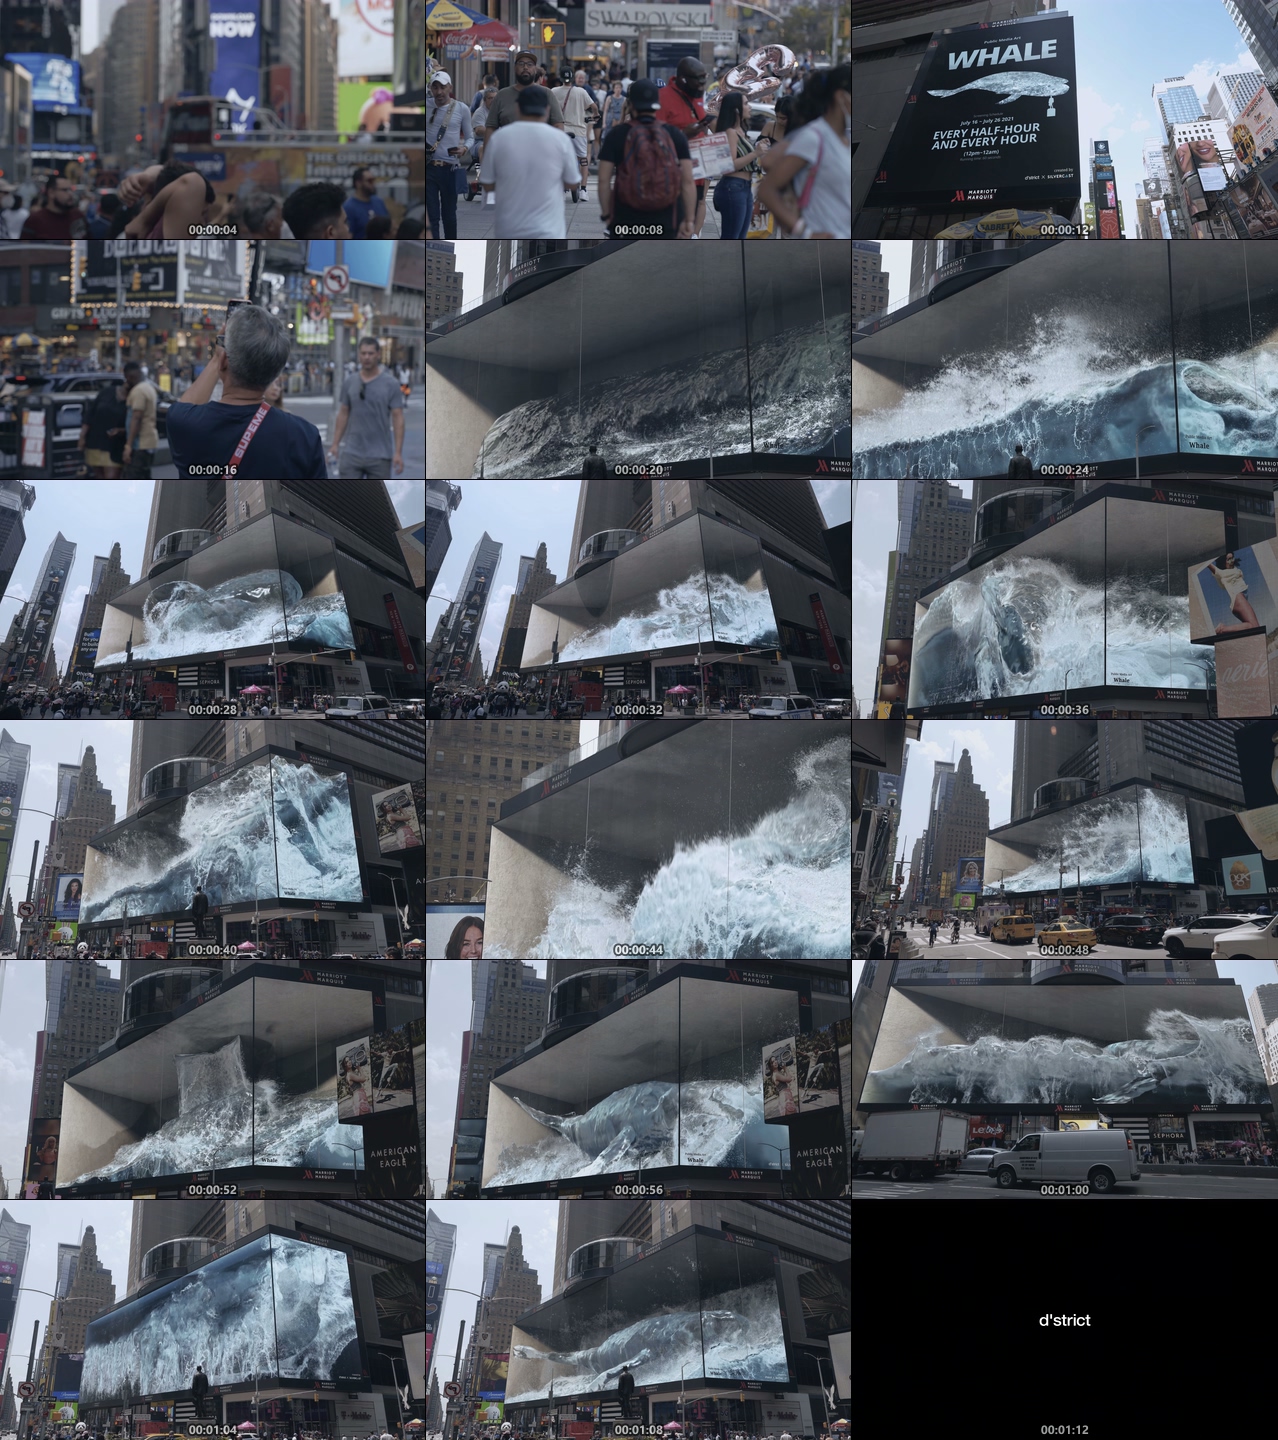 纽约时代广场裸眼3D公共媒体艺术广告牌4K视频素材